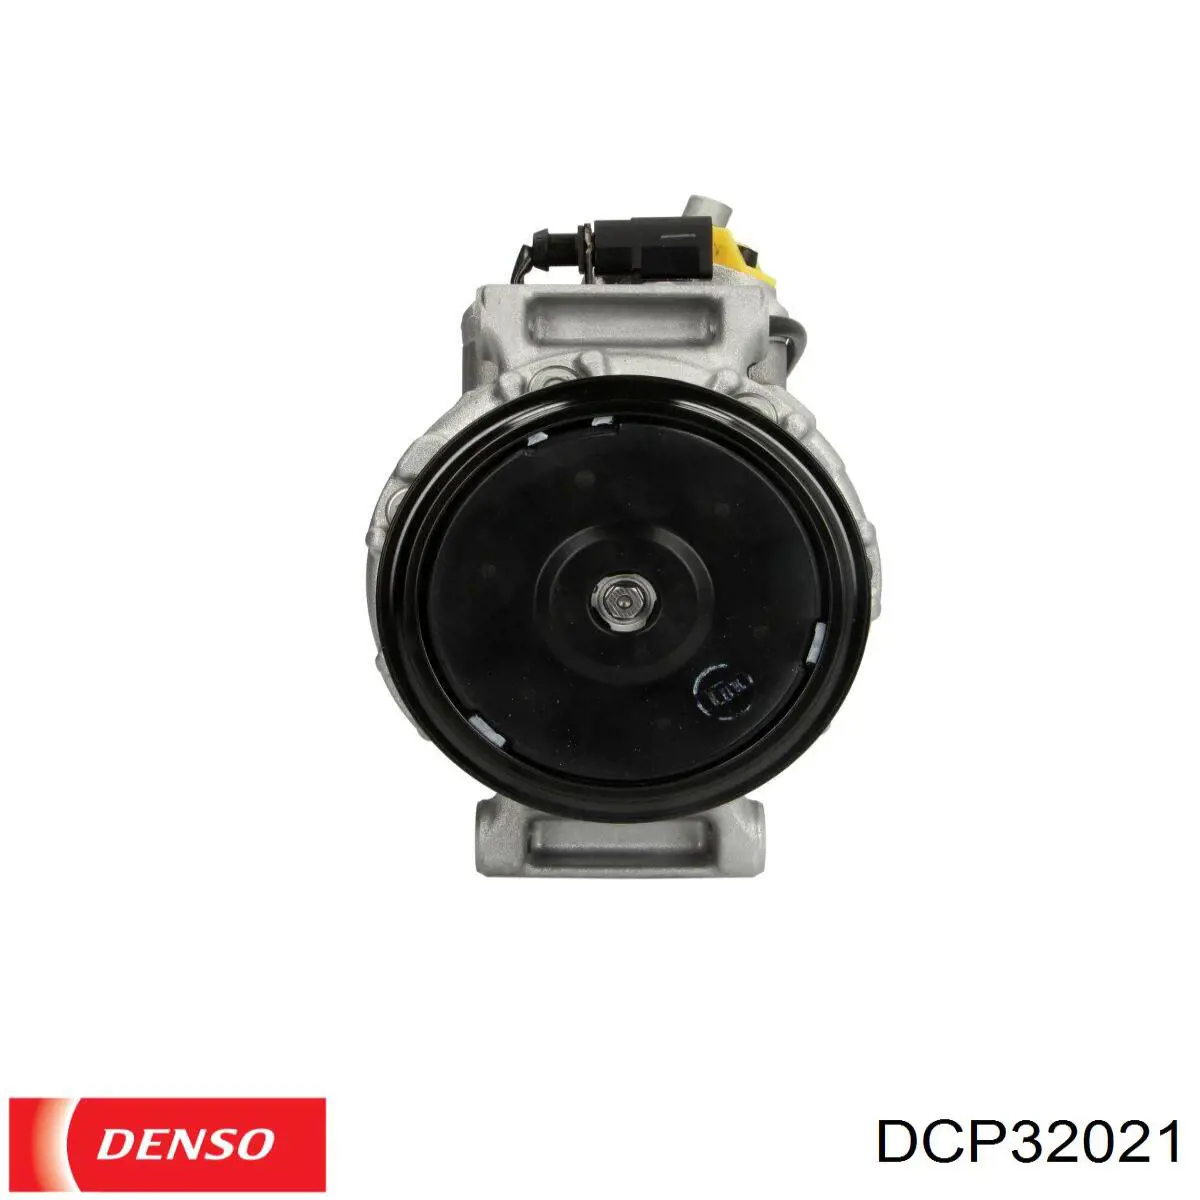 DCP32021 Denso compresor de aire acondicionado